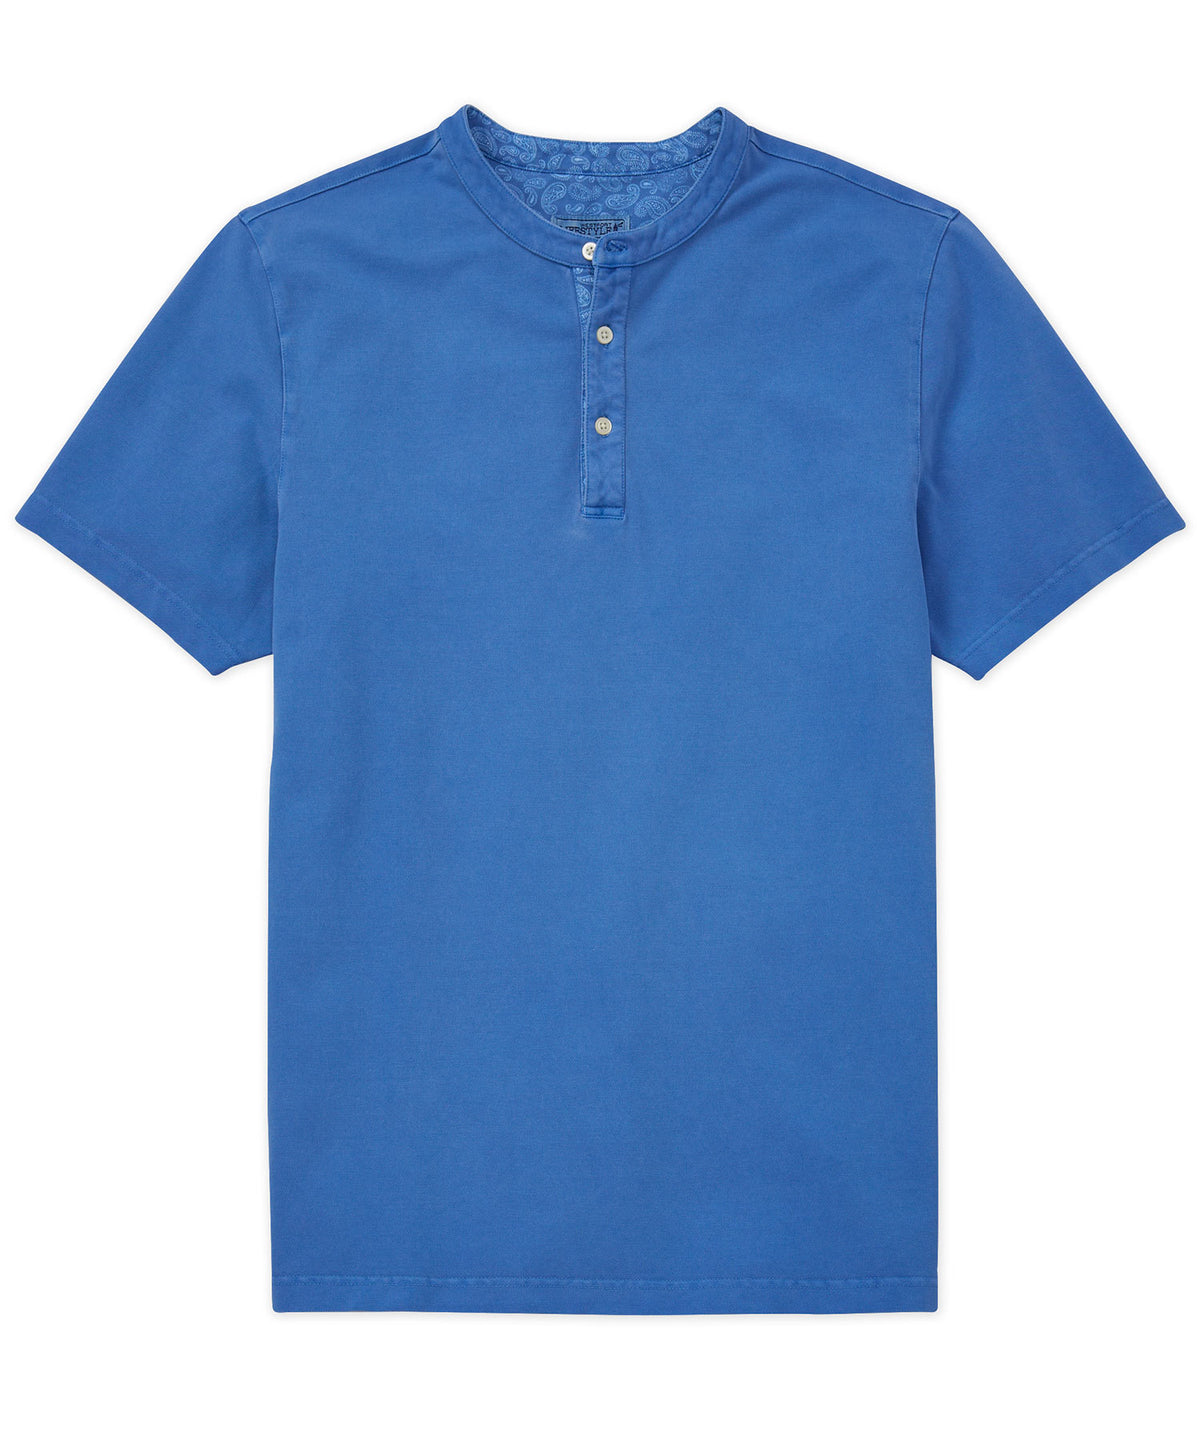 Westport Lifestyle Short Sleeve Garment Dyed Pique Henley Knit Shirt, Men's Big & Tall